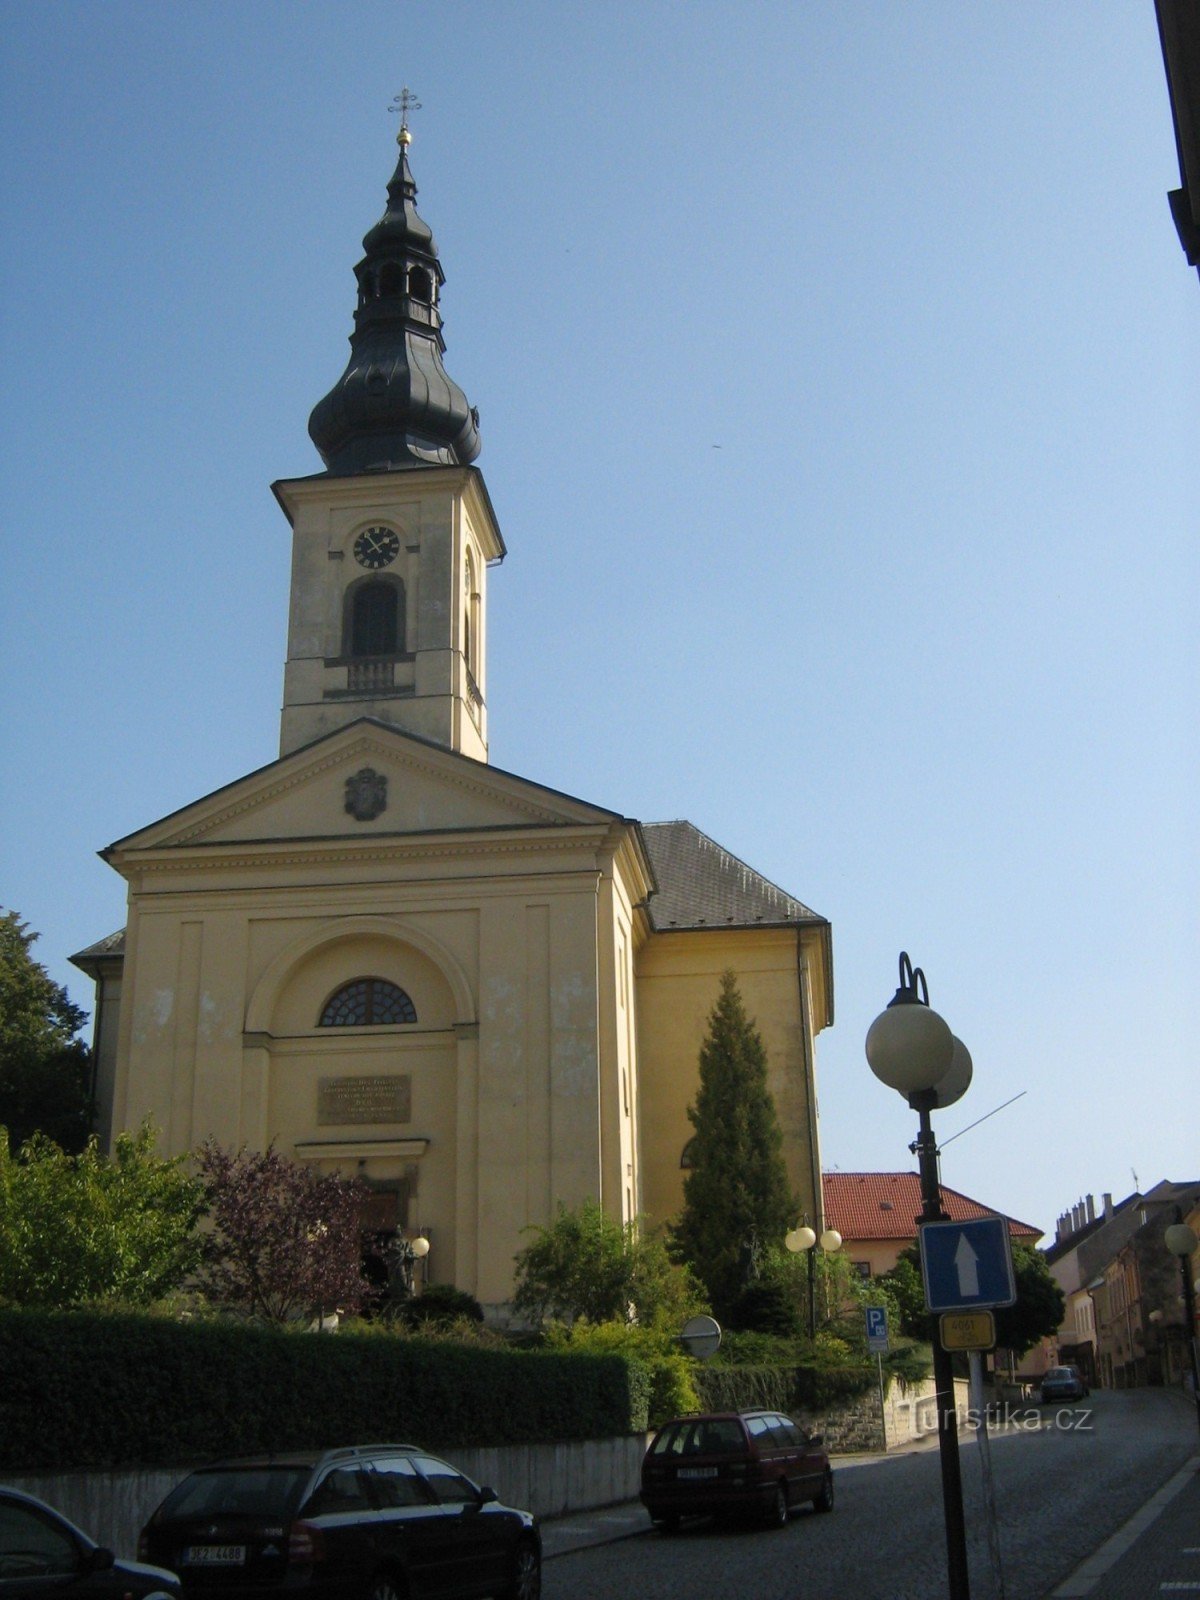 Česká Třebová - Igreja de St. Tiago, o Maior